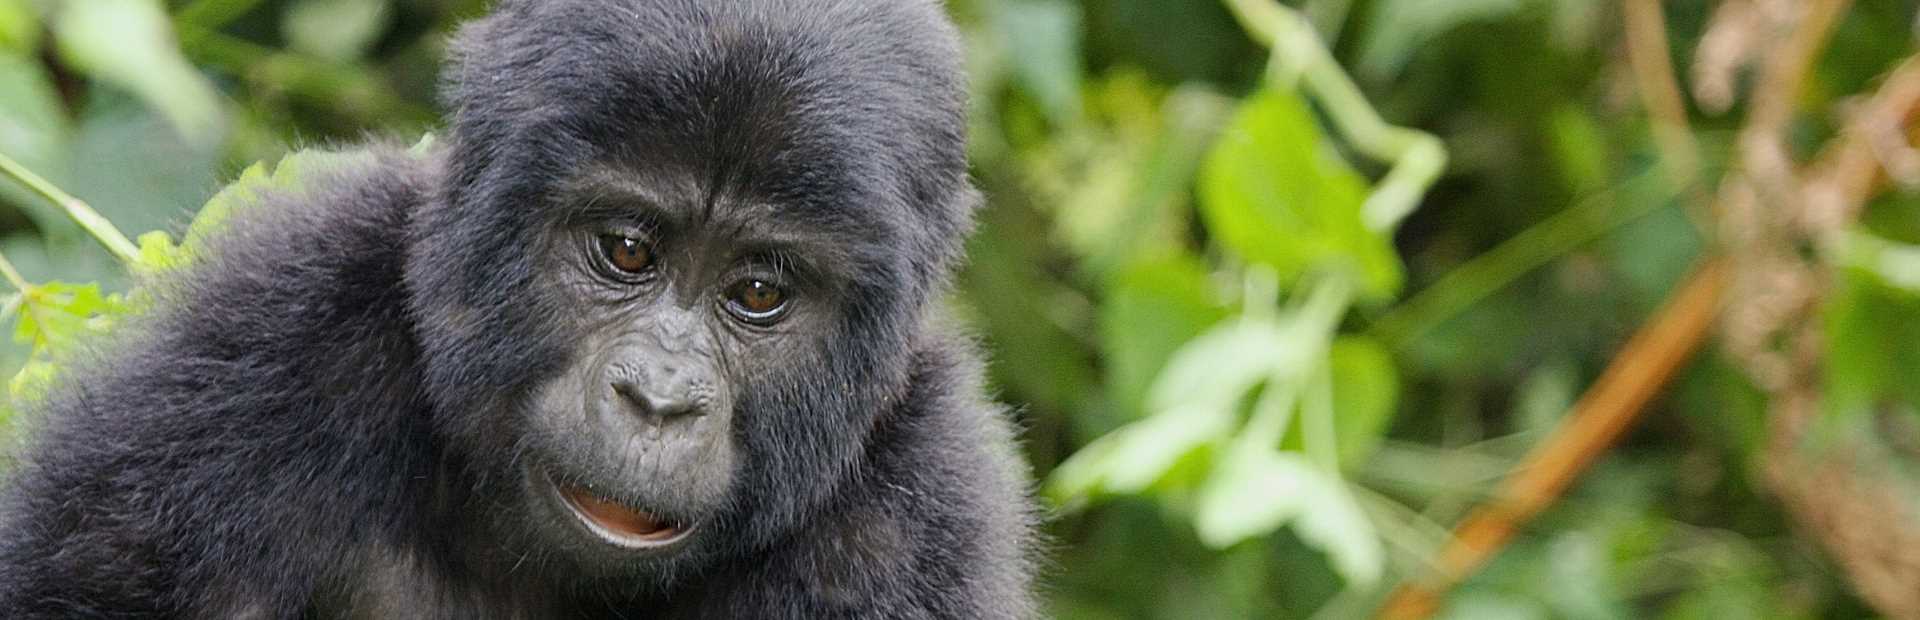 Uganda - Gorilla Safari